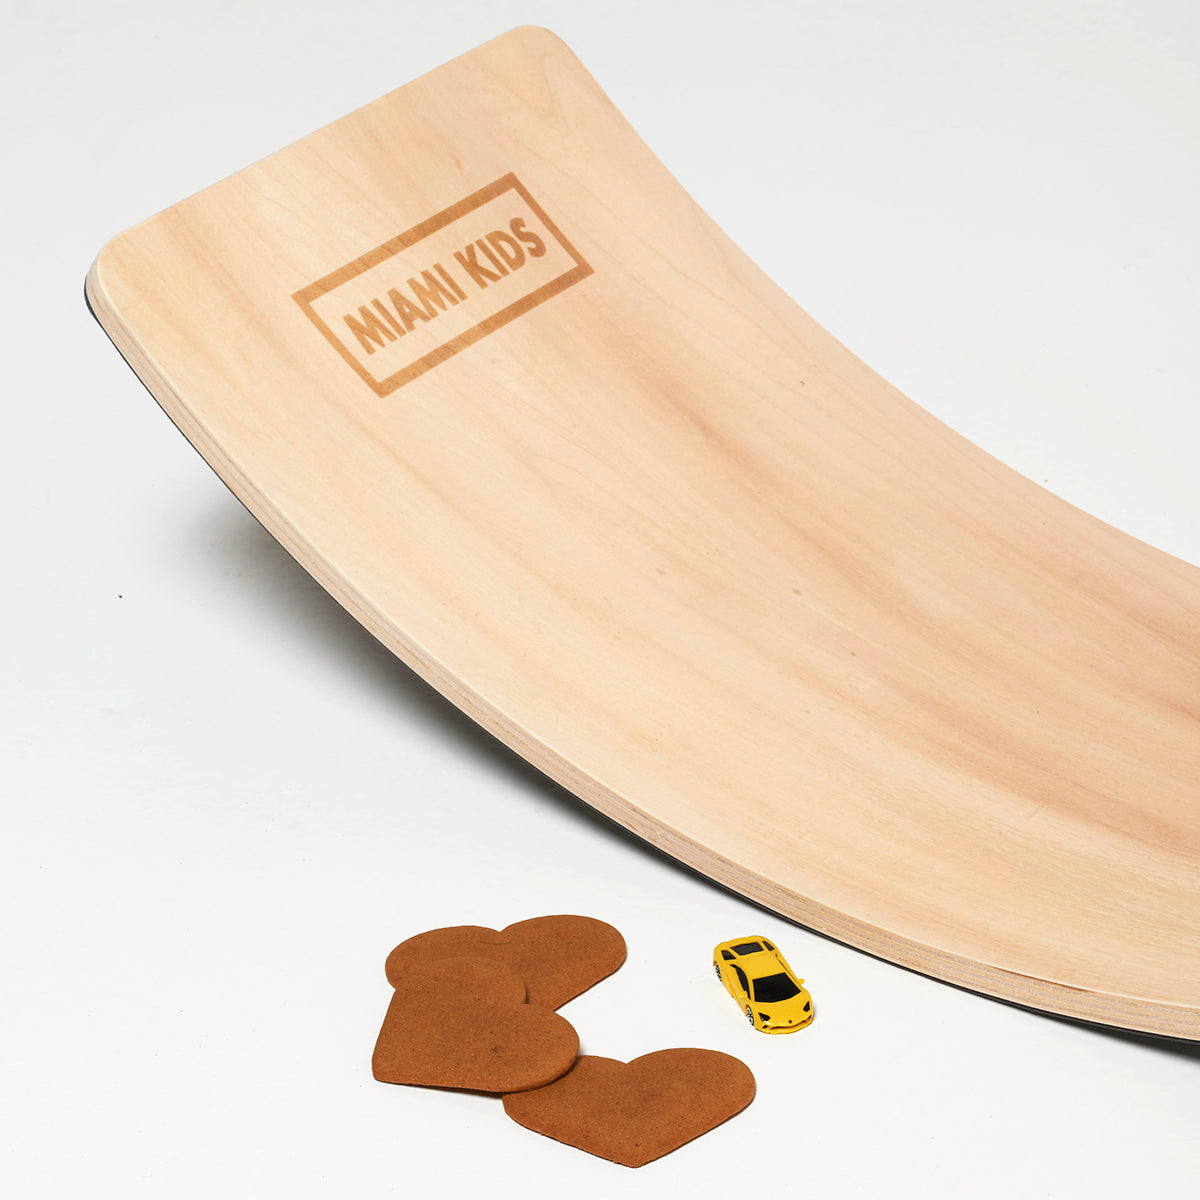 Tabla de equilibrio de madera natural inspirada en Montessori